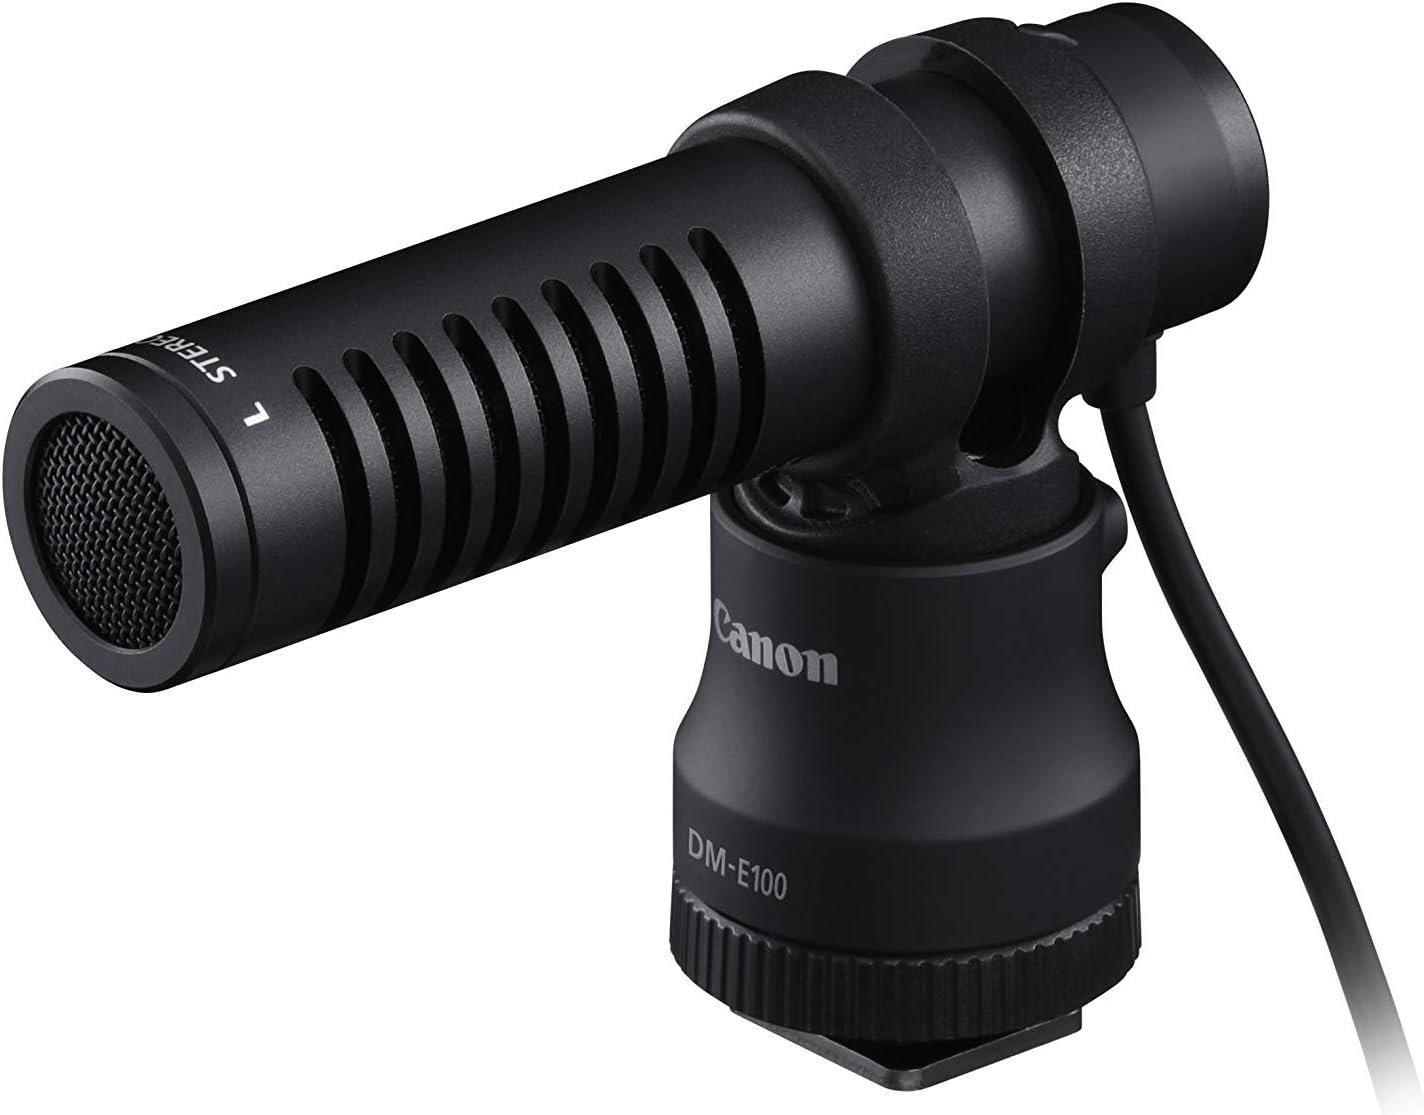 Microphone Canon DM-E100